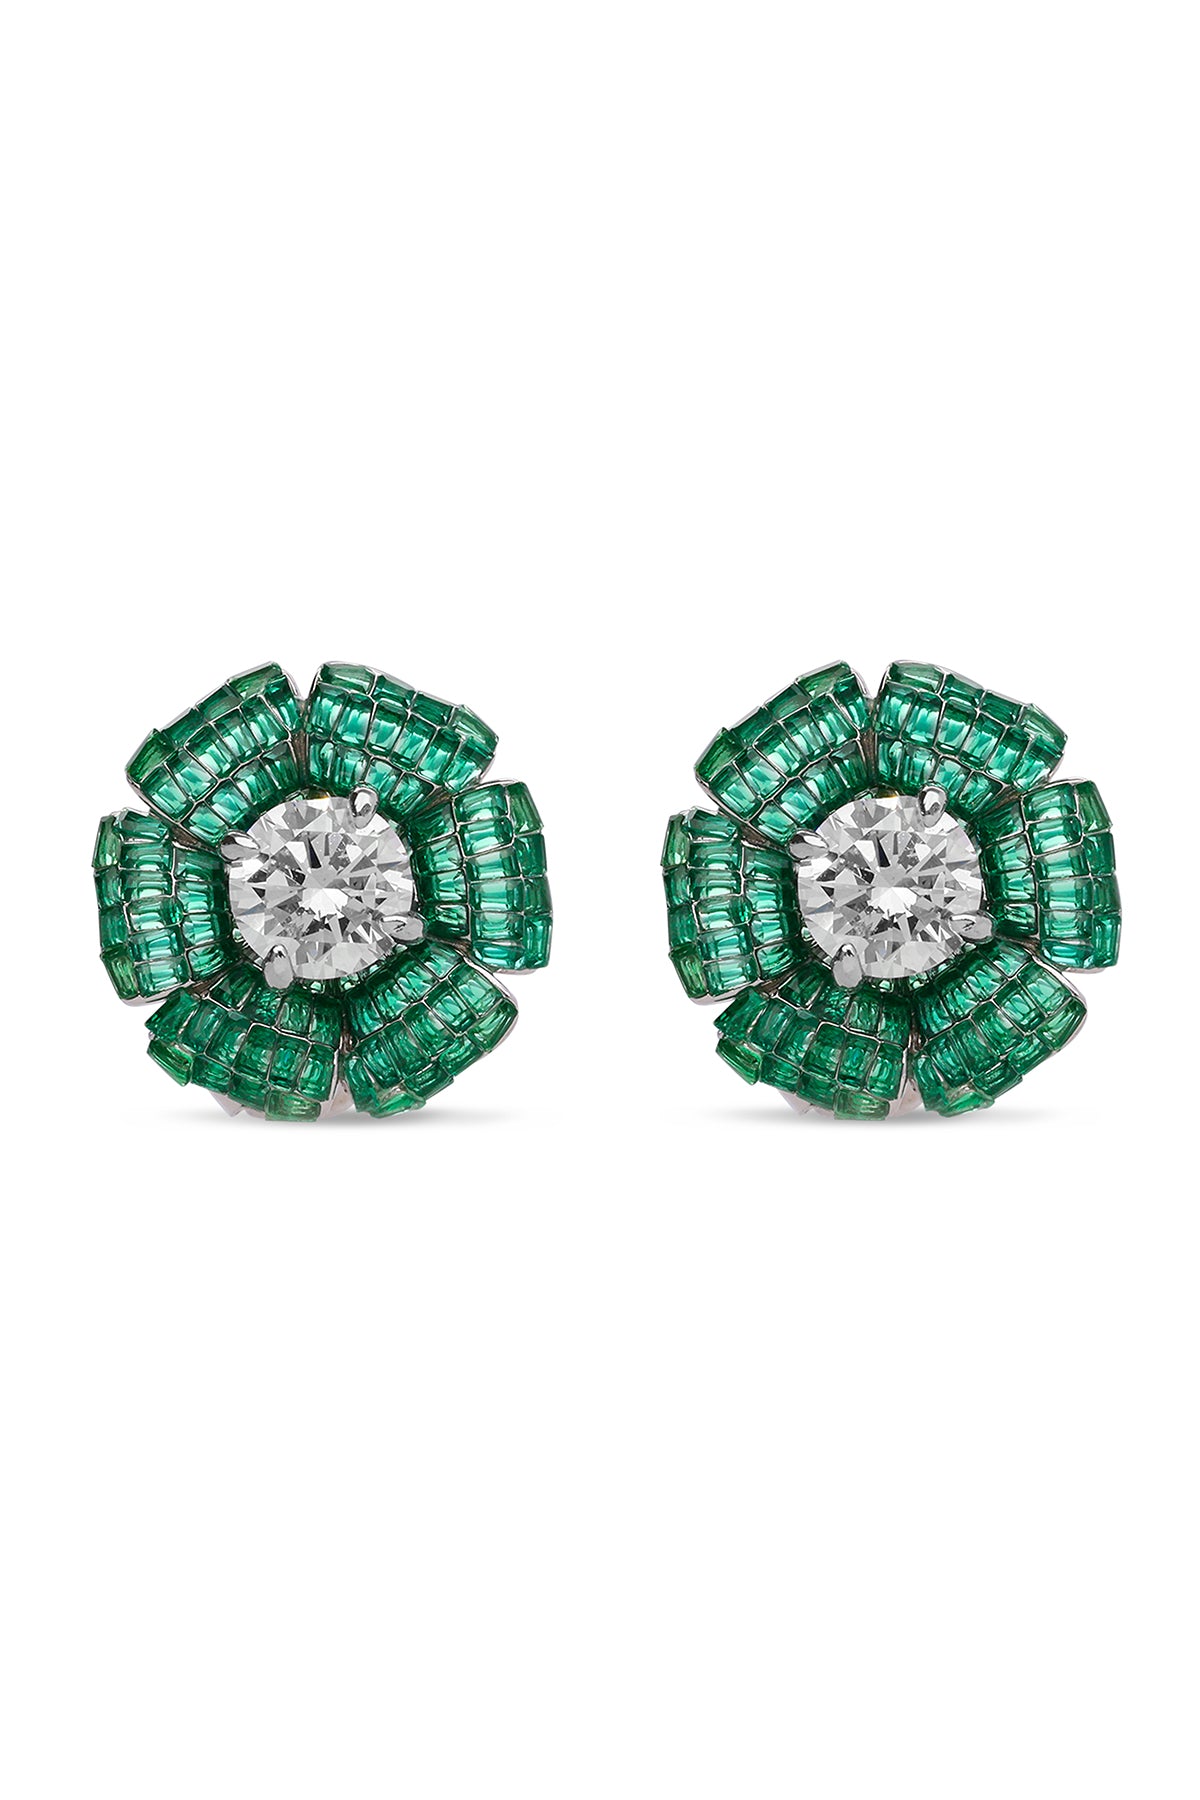 Faerie Emerald Green Forest Stud Earrings